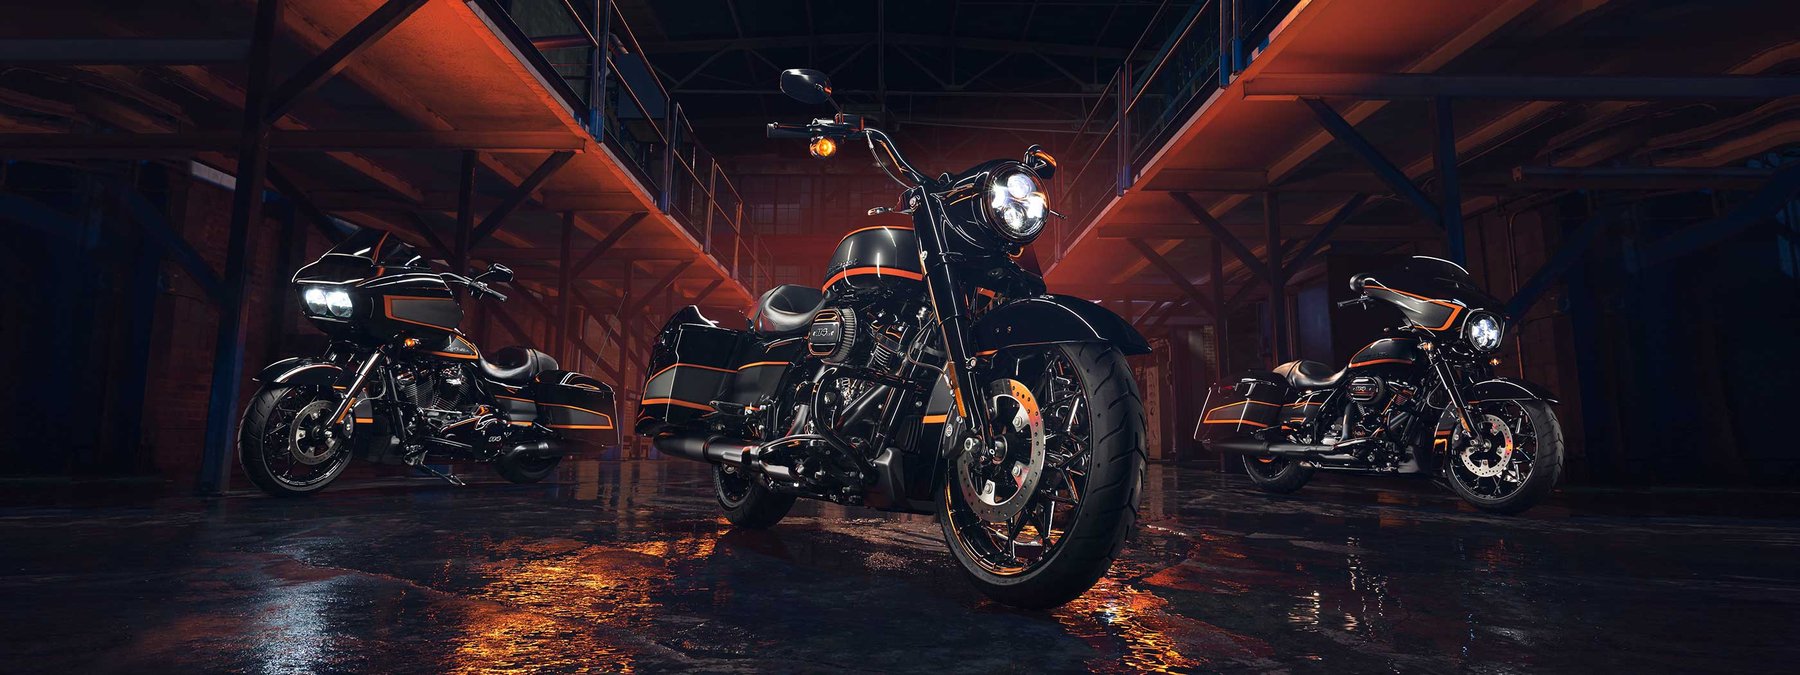 Kustomoitu Apex-maali Harley-Davidson-moottoripyörissä